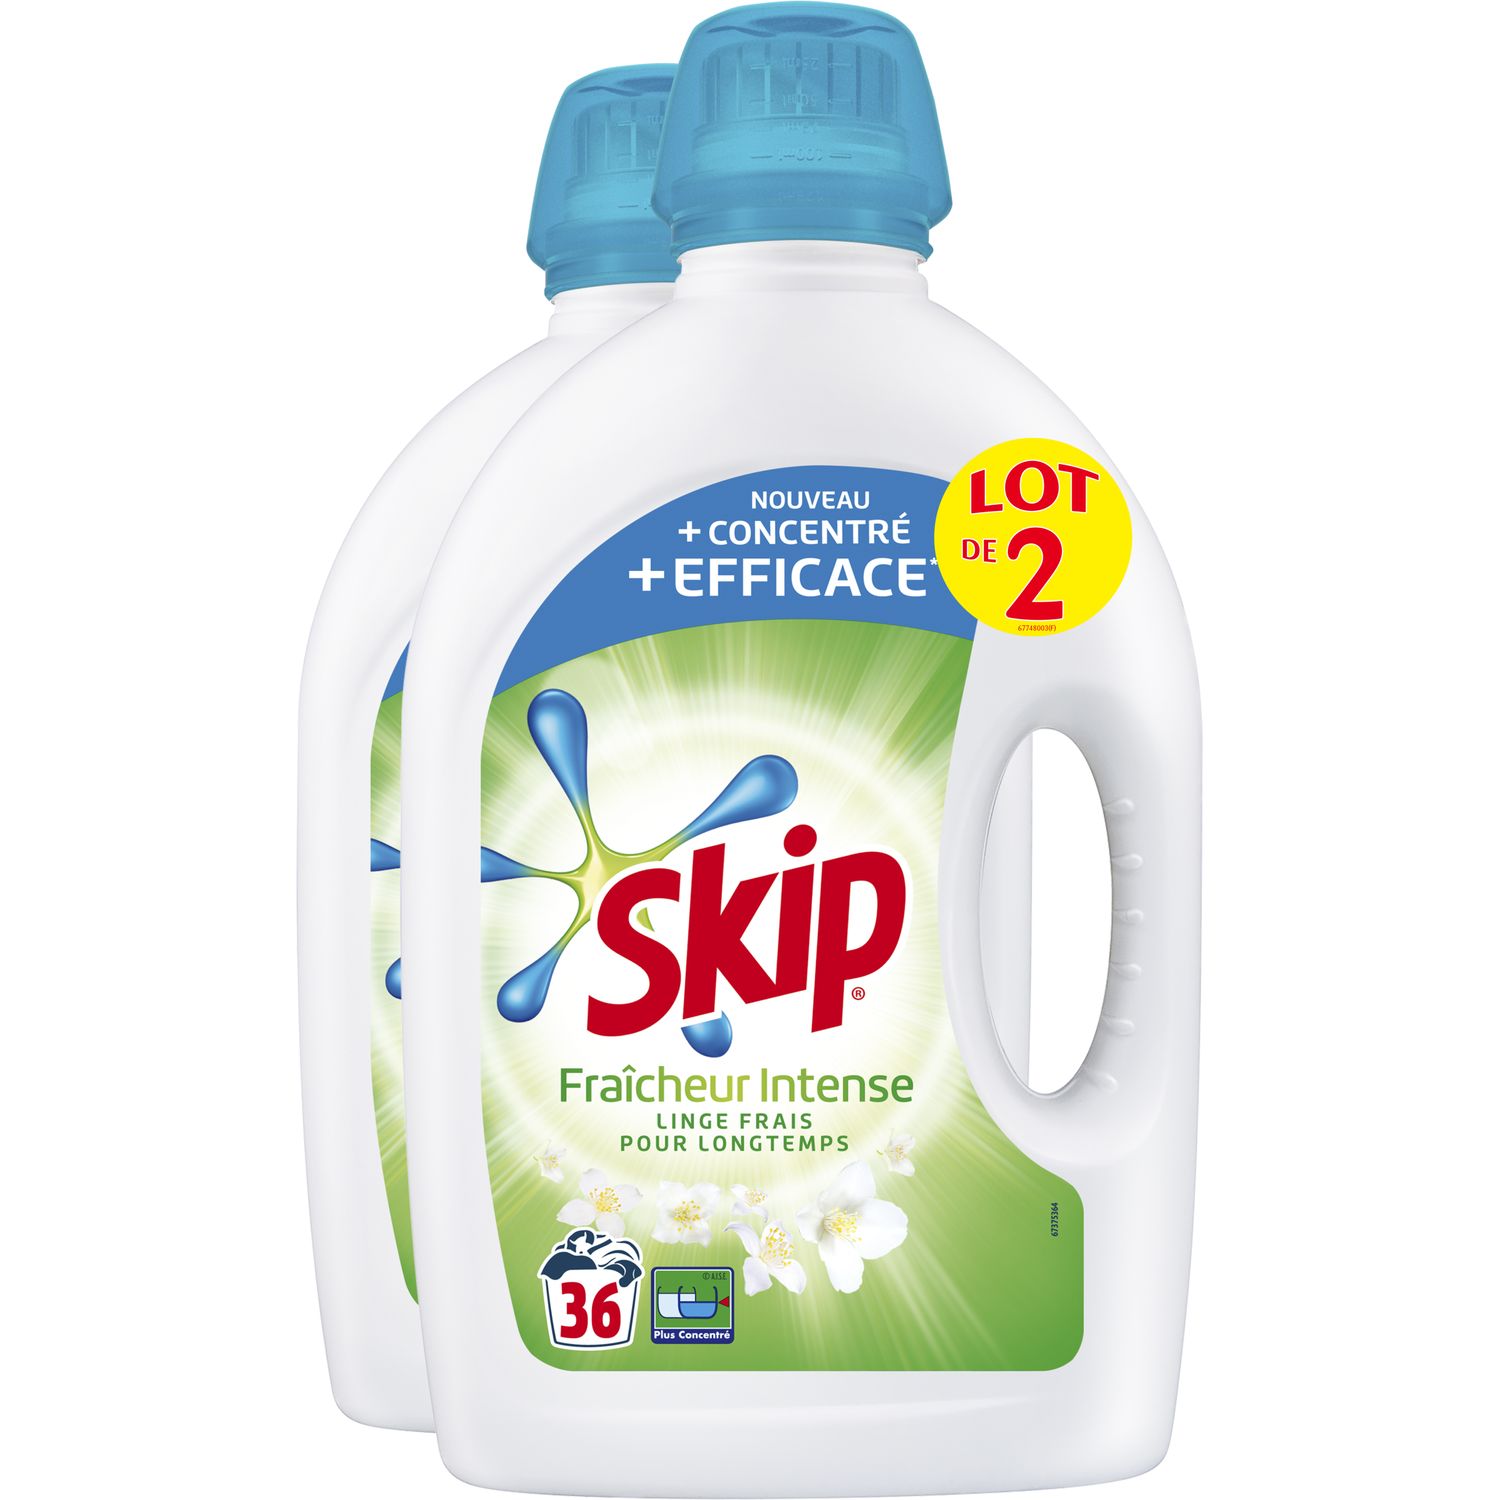 SKIP Skip Lessive liquide fraîcheur intense 72 lavages 2x1,8l 72